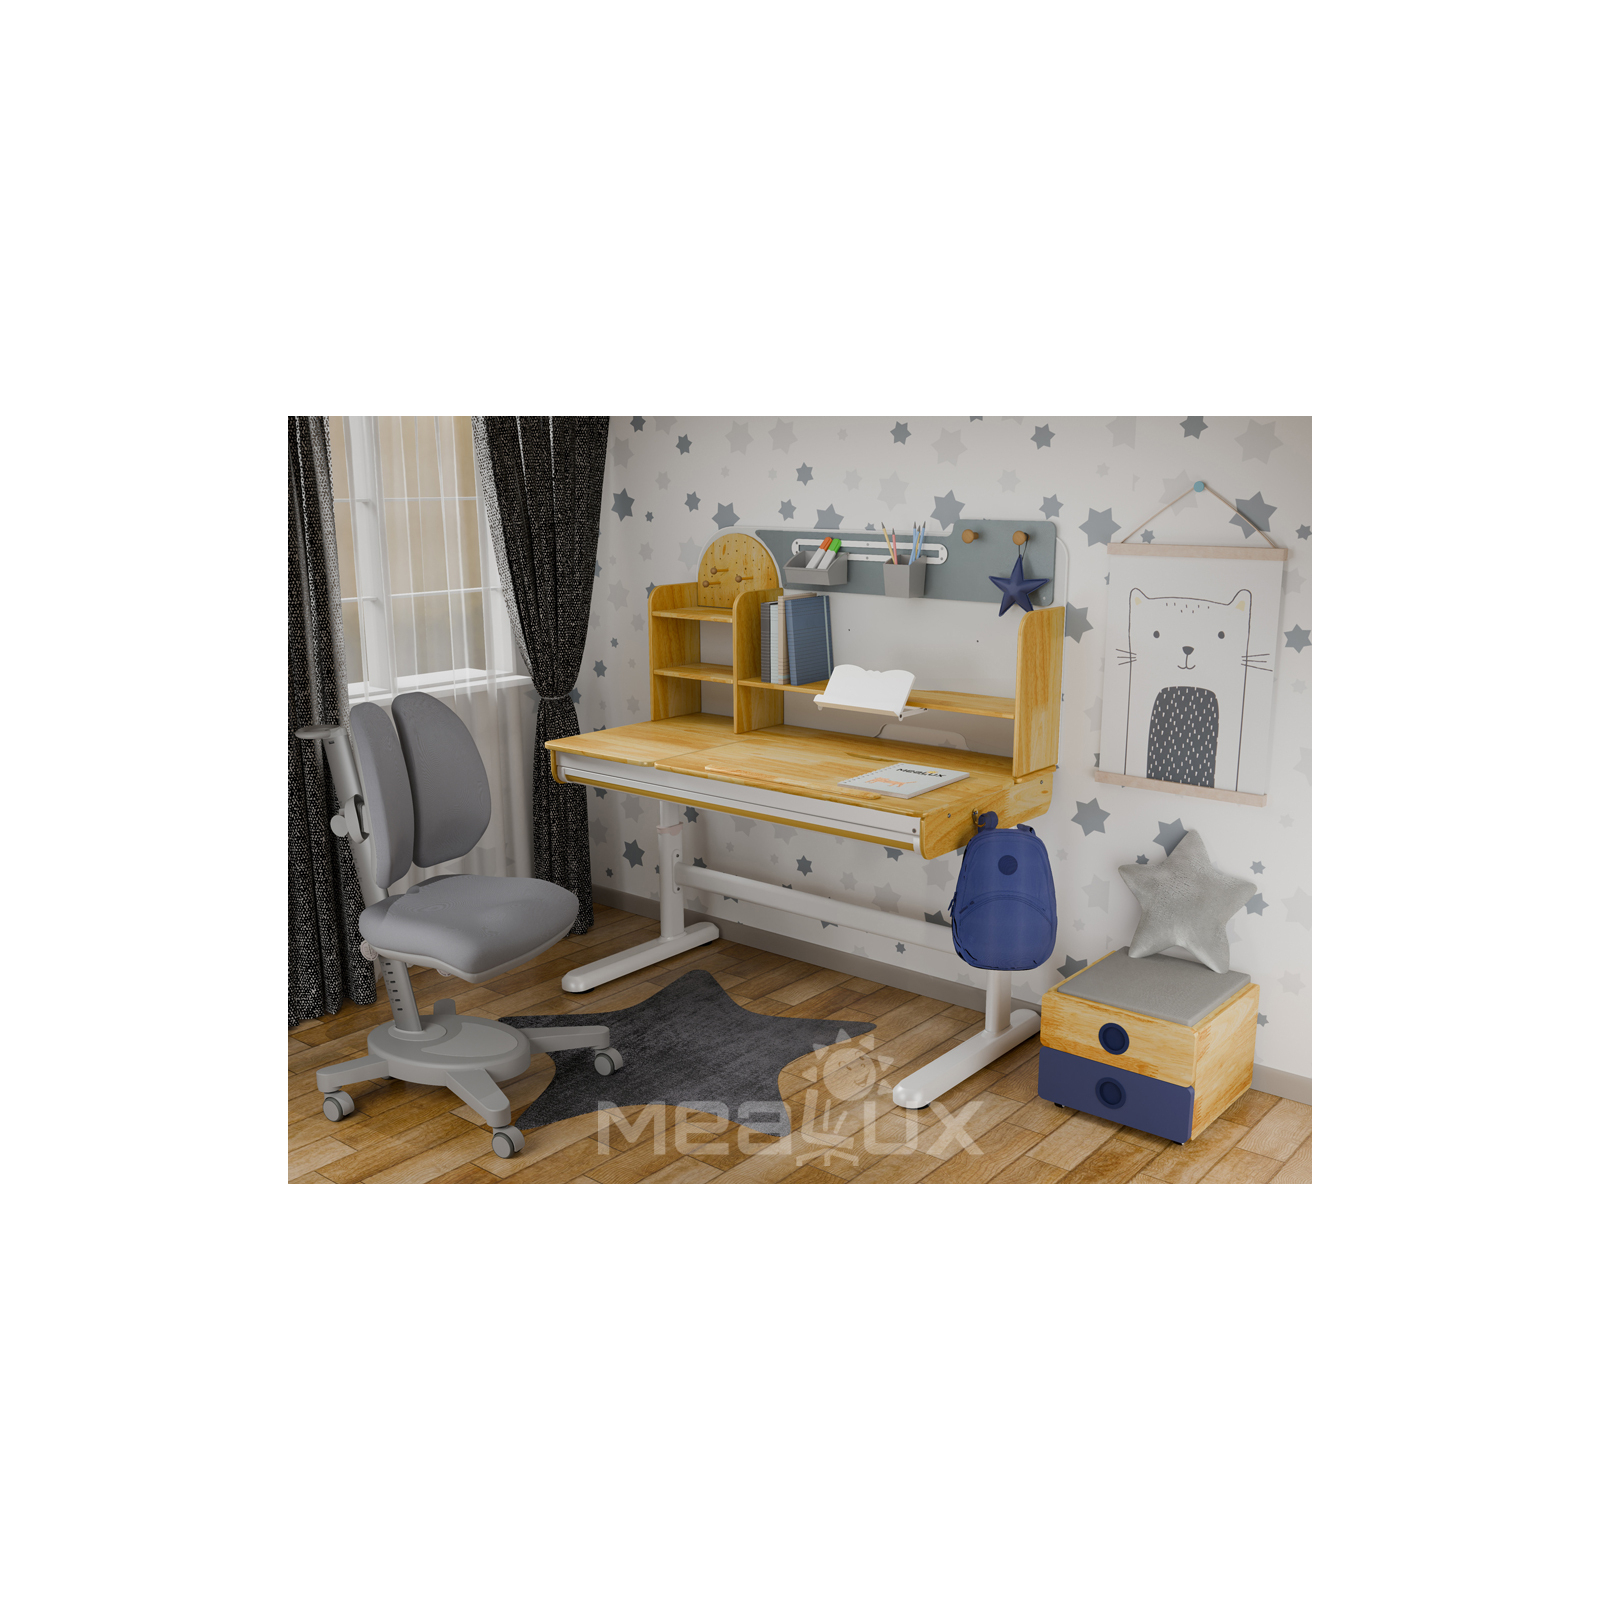 Парта с креслом Mealux Timberdesk L (парта+кресло+тумба) (BD-690 L+ box BD 920-2 BL+Y-115 TG) изображение 2